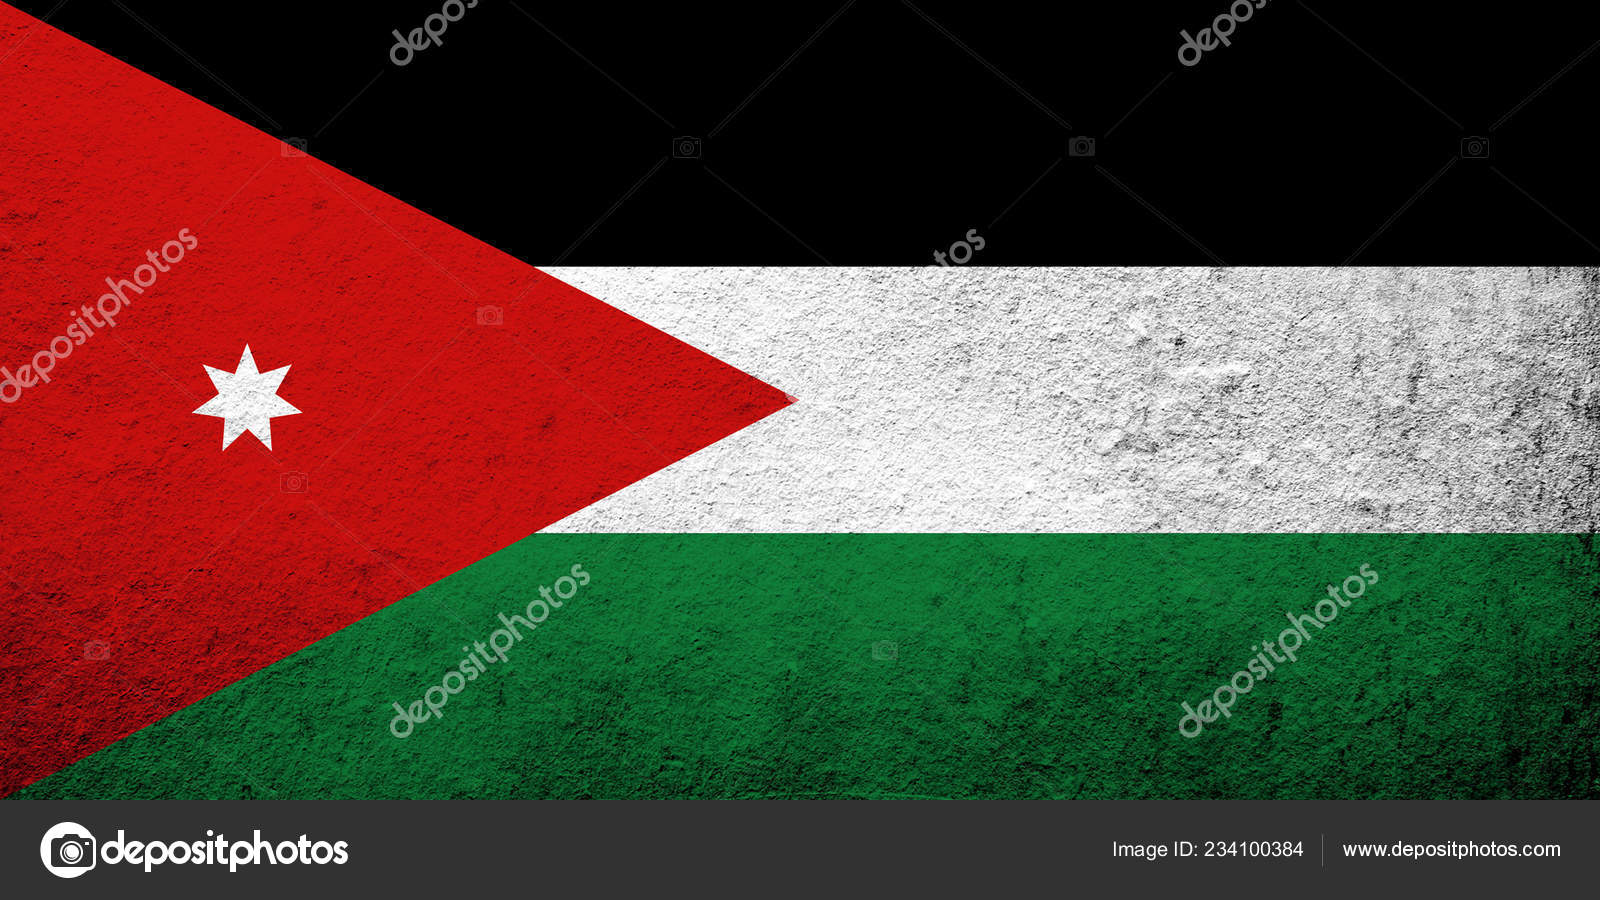 Hashemite Kingdom Of Jordan - HD Wallpaper 